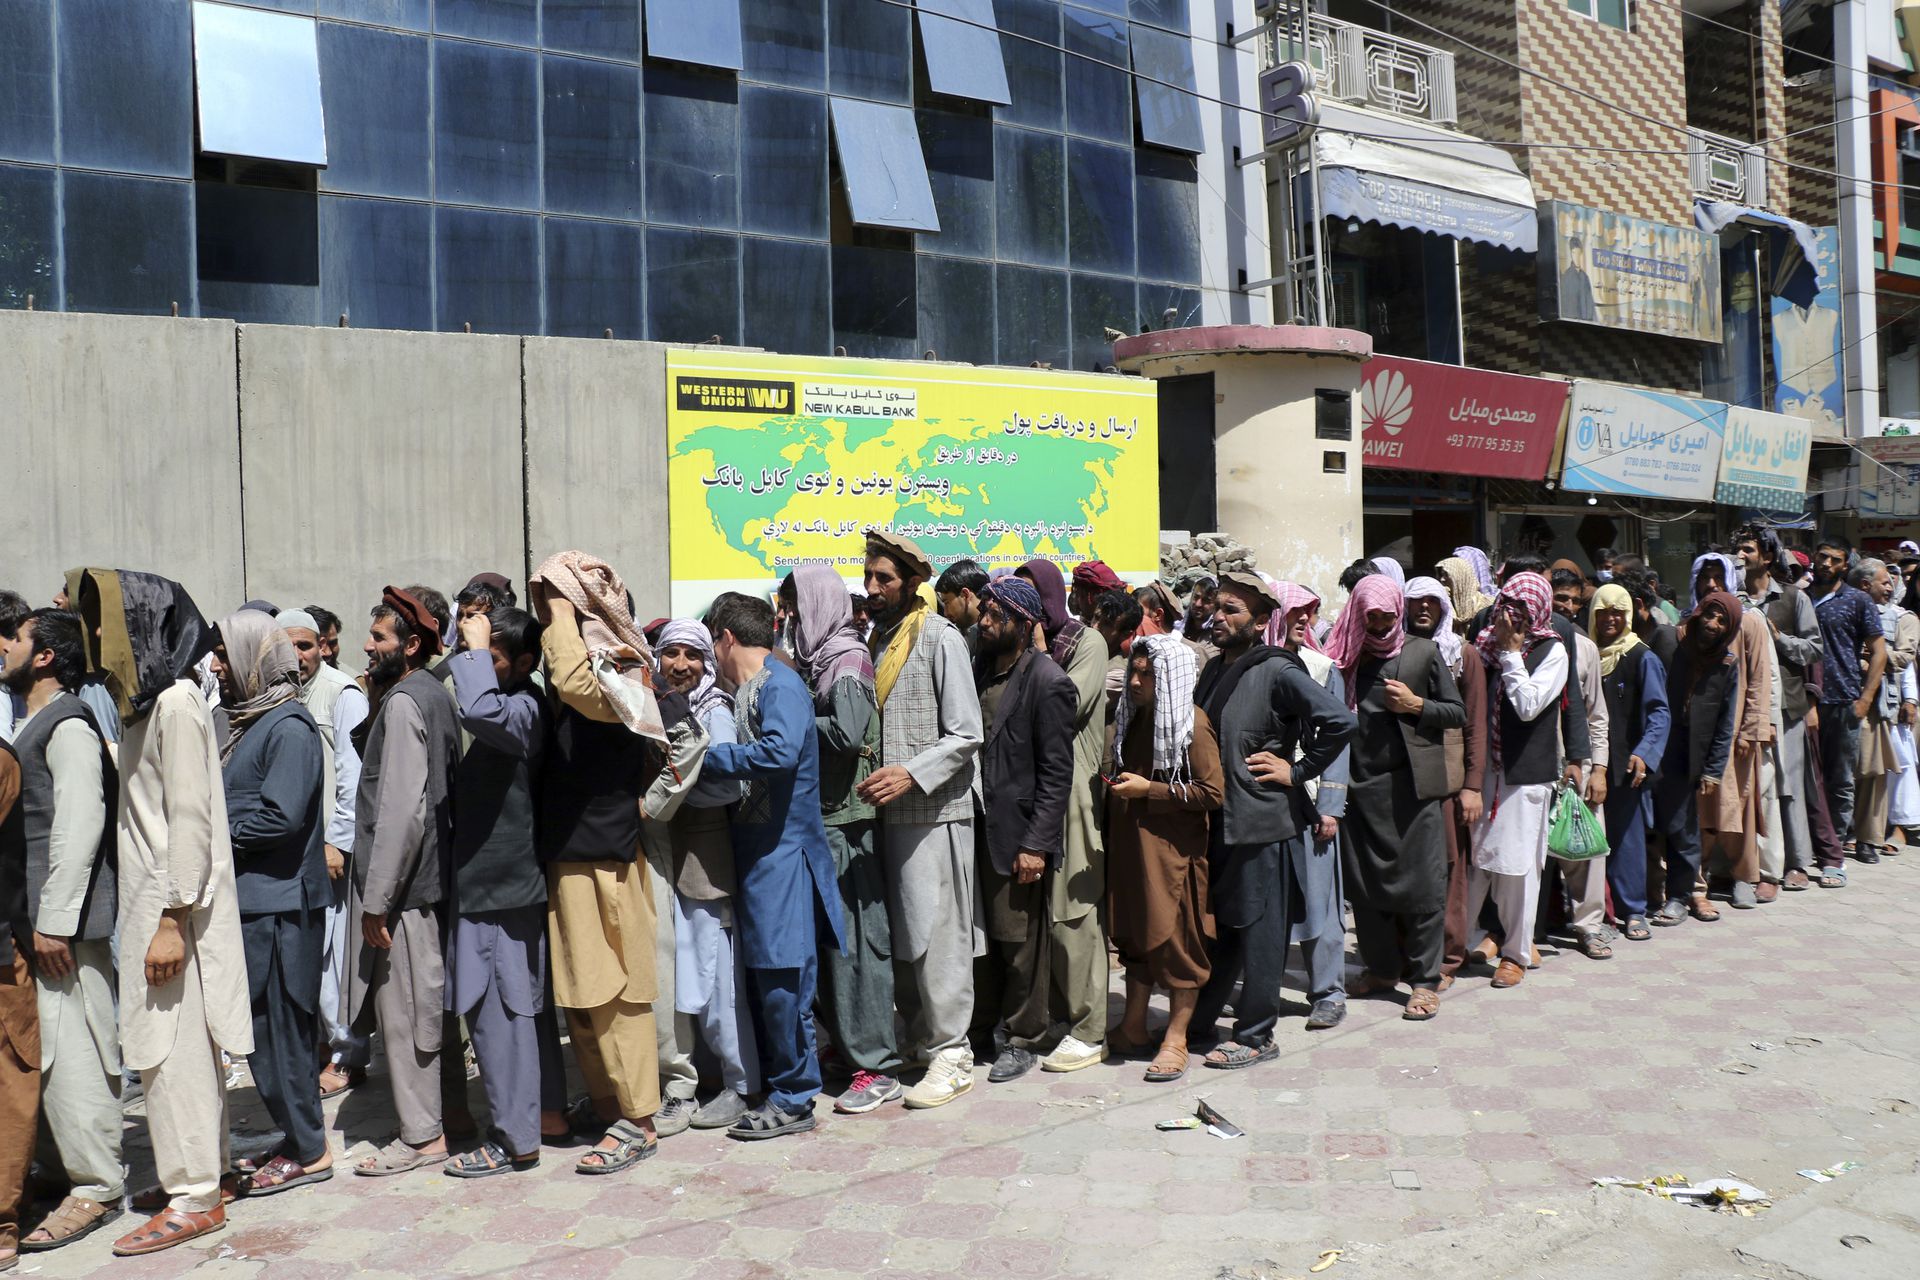 Afganos esperan fuera del Kabul Bank en Kabul.  Los talibanes recuperaron el control de Afganistán casi 20 años después de que fueron derrocados en una invasión liderada por Estados Unidos tras los ataques del 11 de septiembre.  Su regreso al poder ha empujado a muchos afganos a huir por temor a represalias de los combatientes o un regreso al brutal gobierno que impusieron la última vez que gobernaron el país.